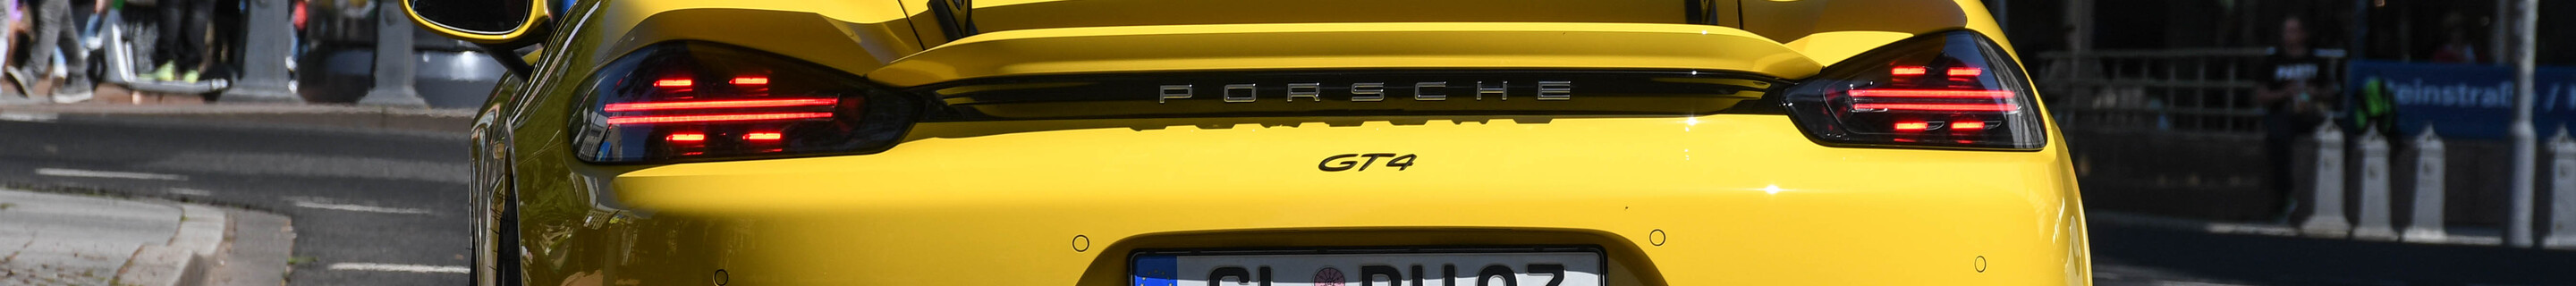 Porsche 718 Cayman GT4